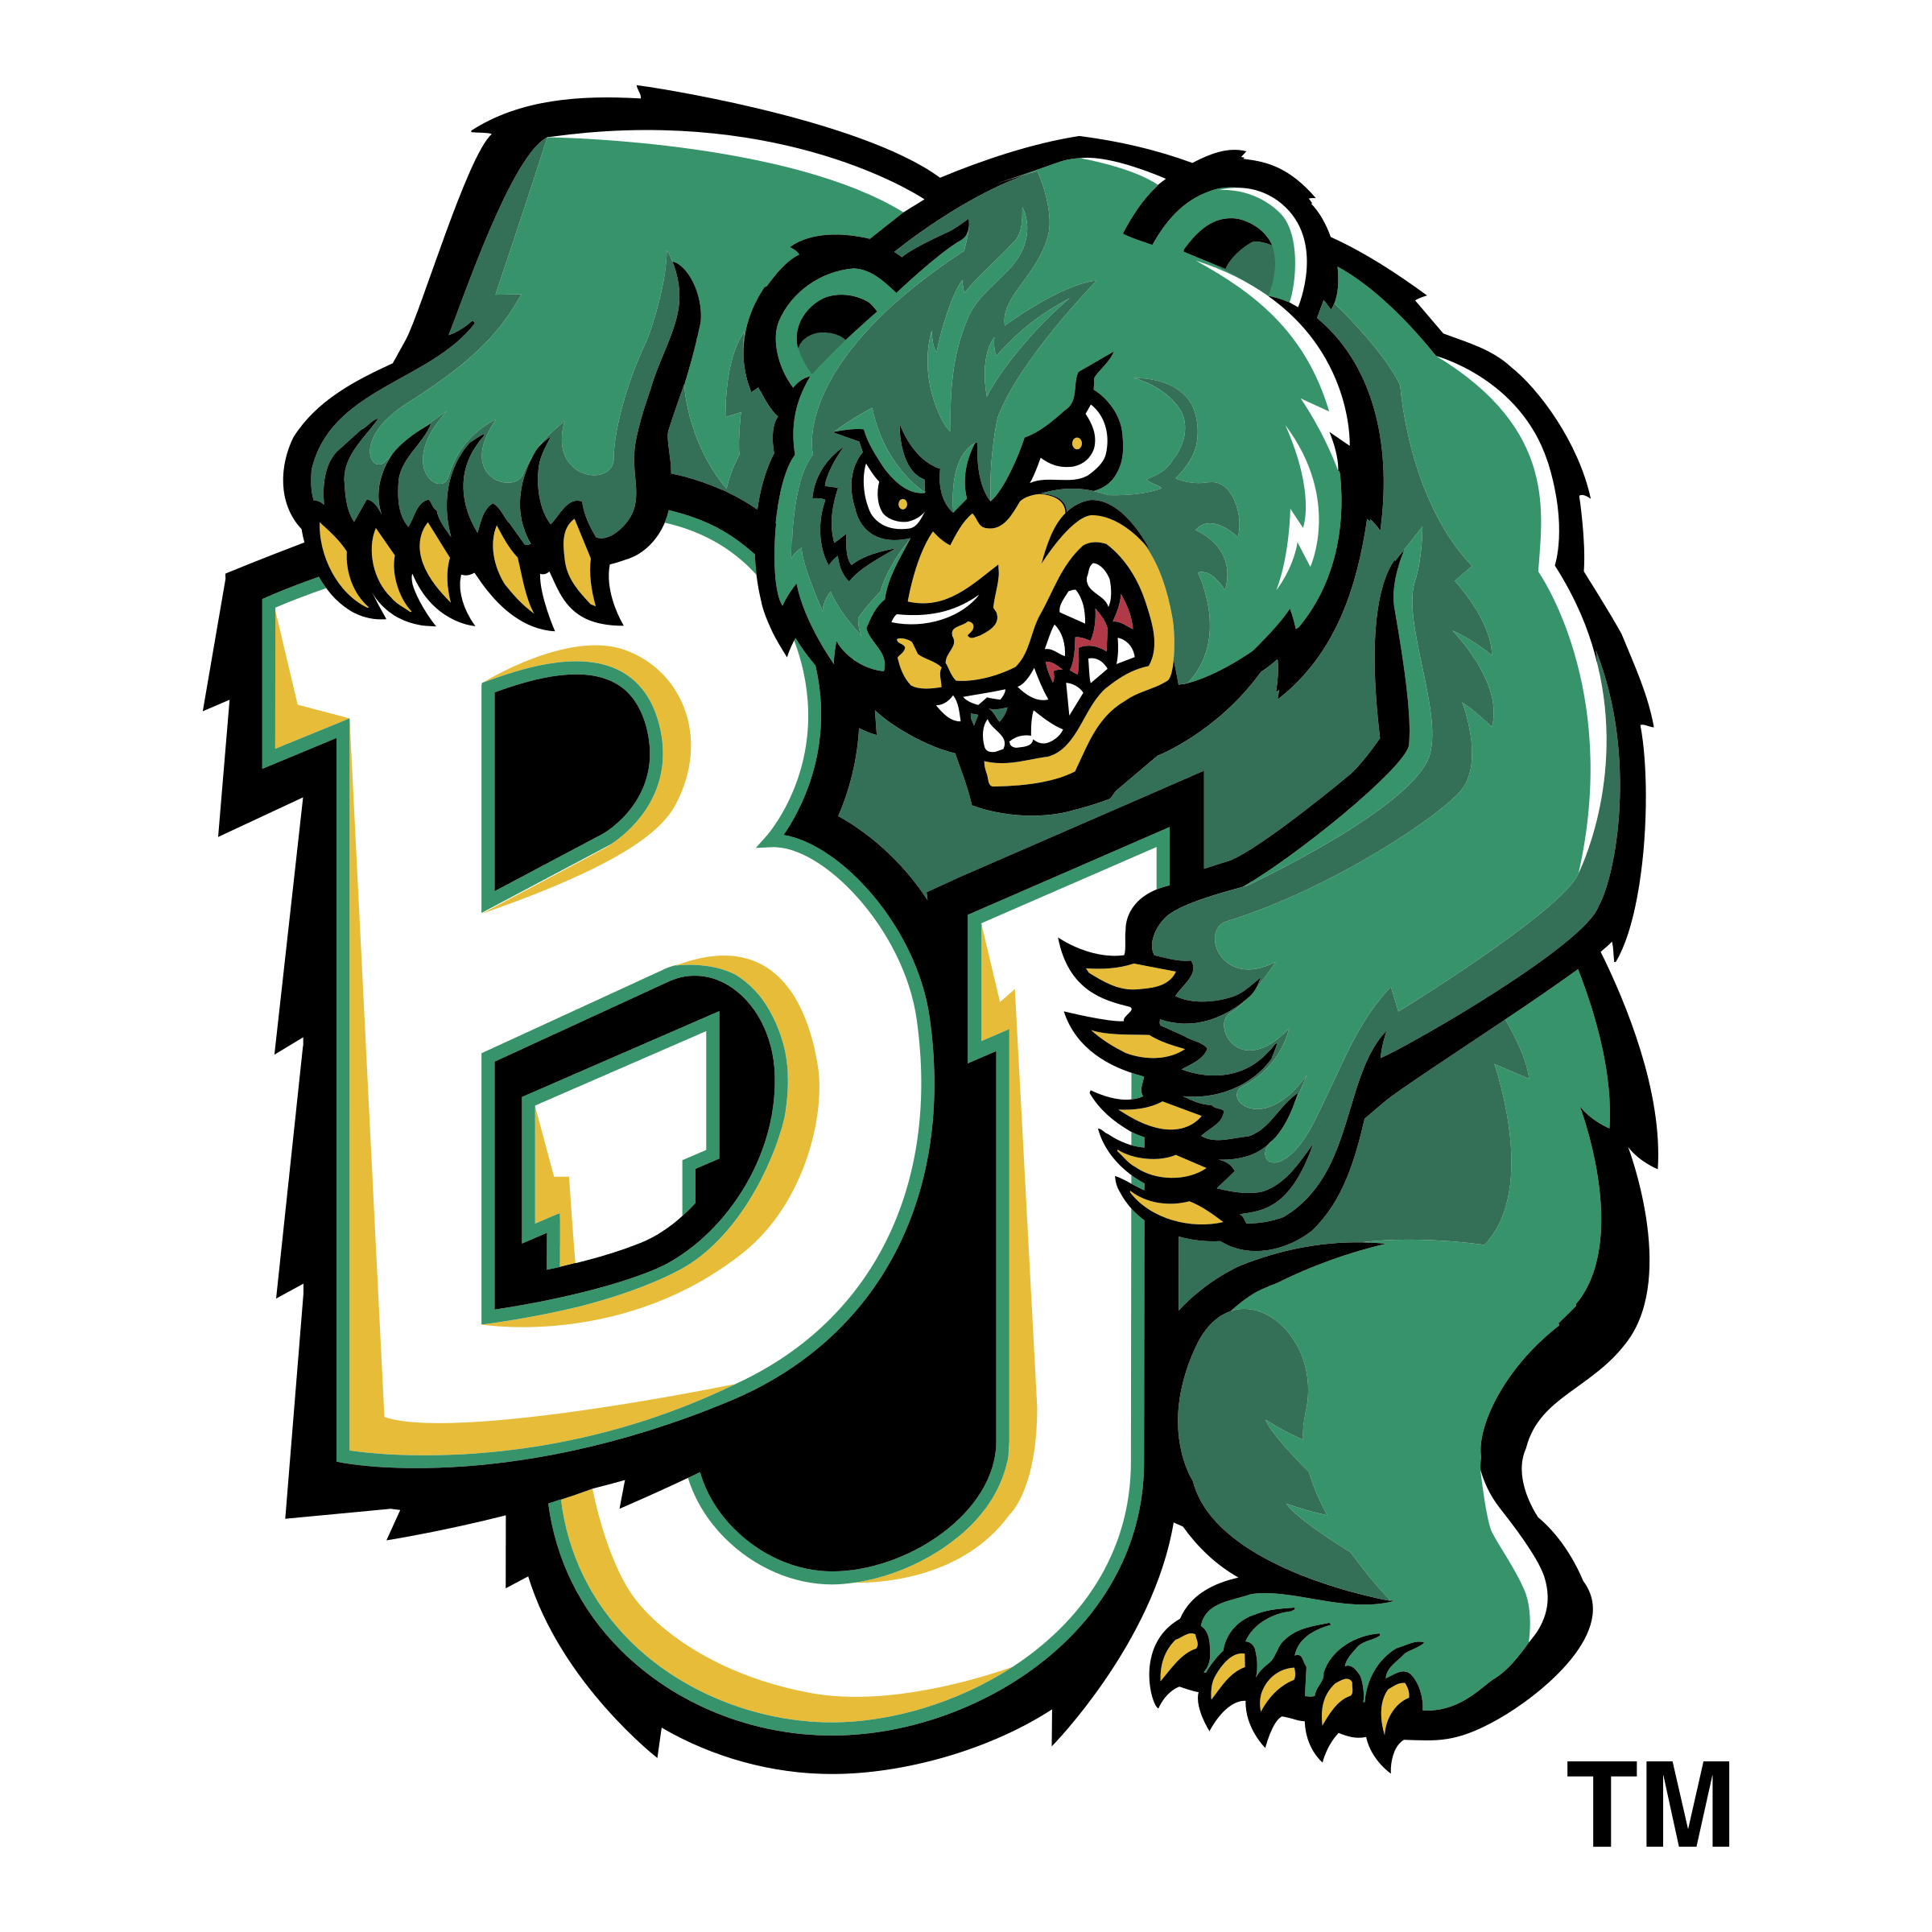 Baylor Bears Logo - Baylor Bears 05 Logo PNG Transparent & SVG Vector